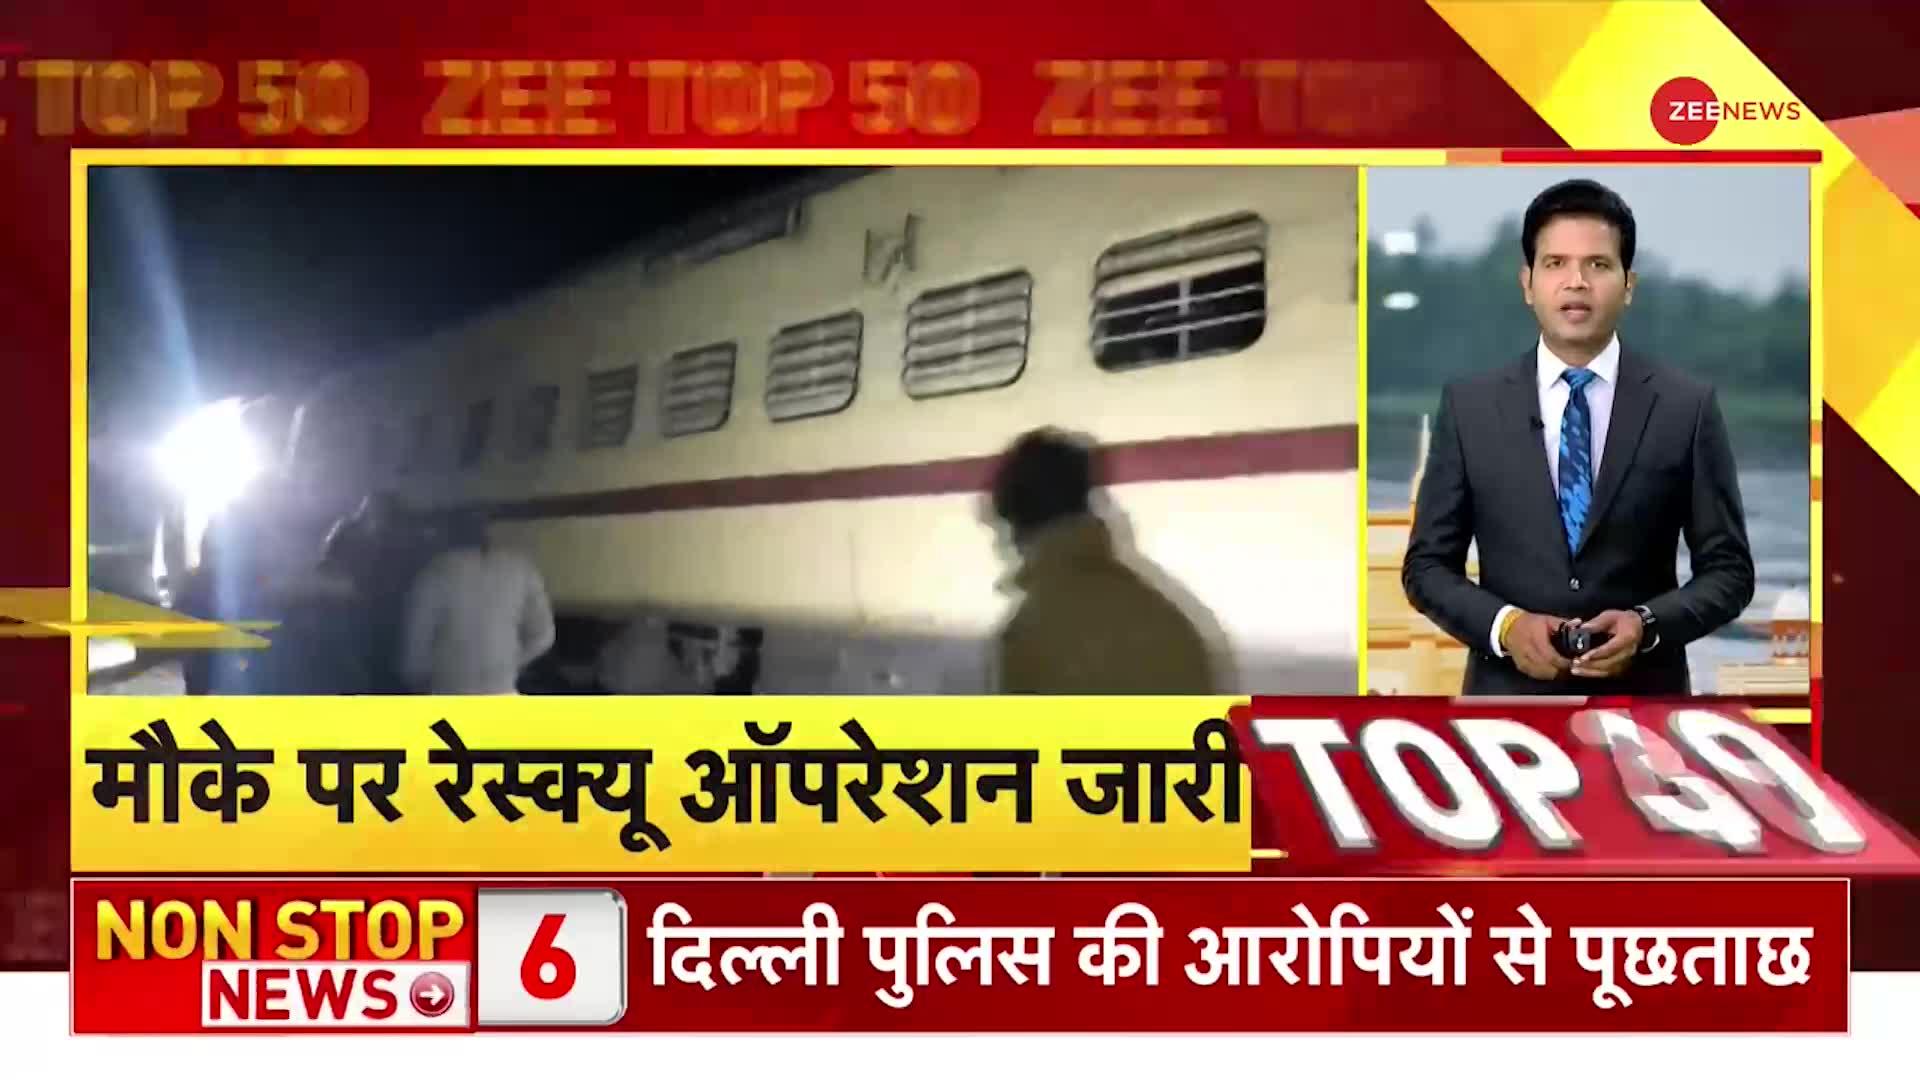 Zee Top 50: Rajasthan में बड़ा रेल हादसा, सूर्यनगरी एक्सप्रेस ट्रेन के 11 डिब्बे पटरी से उतरे